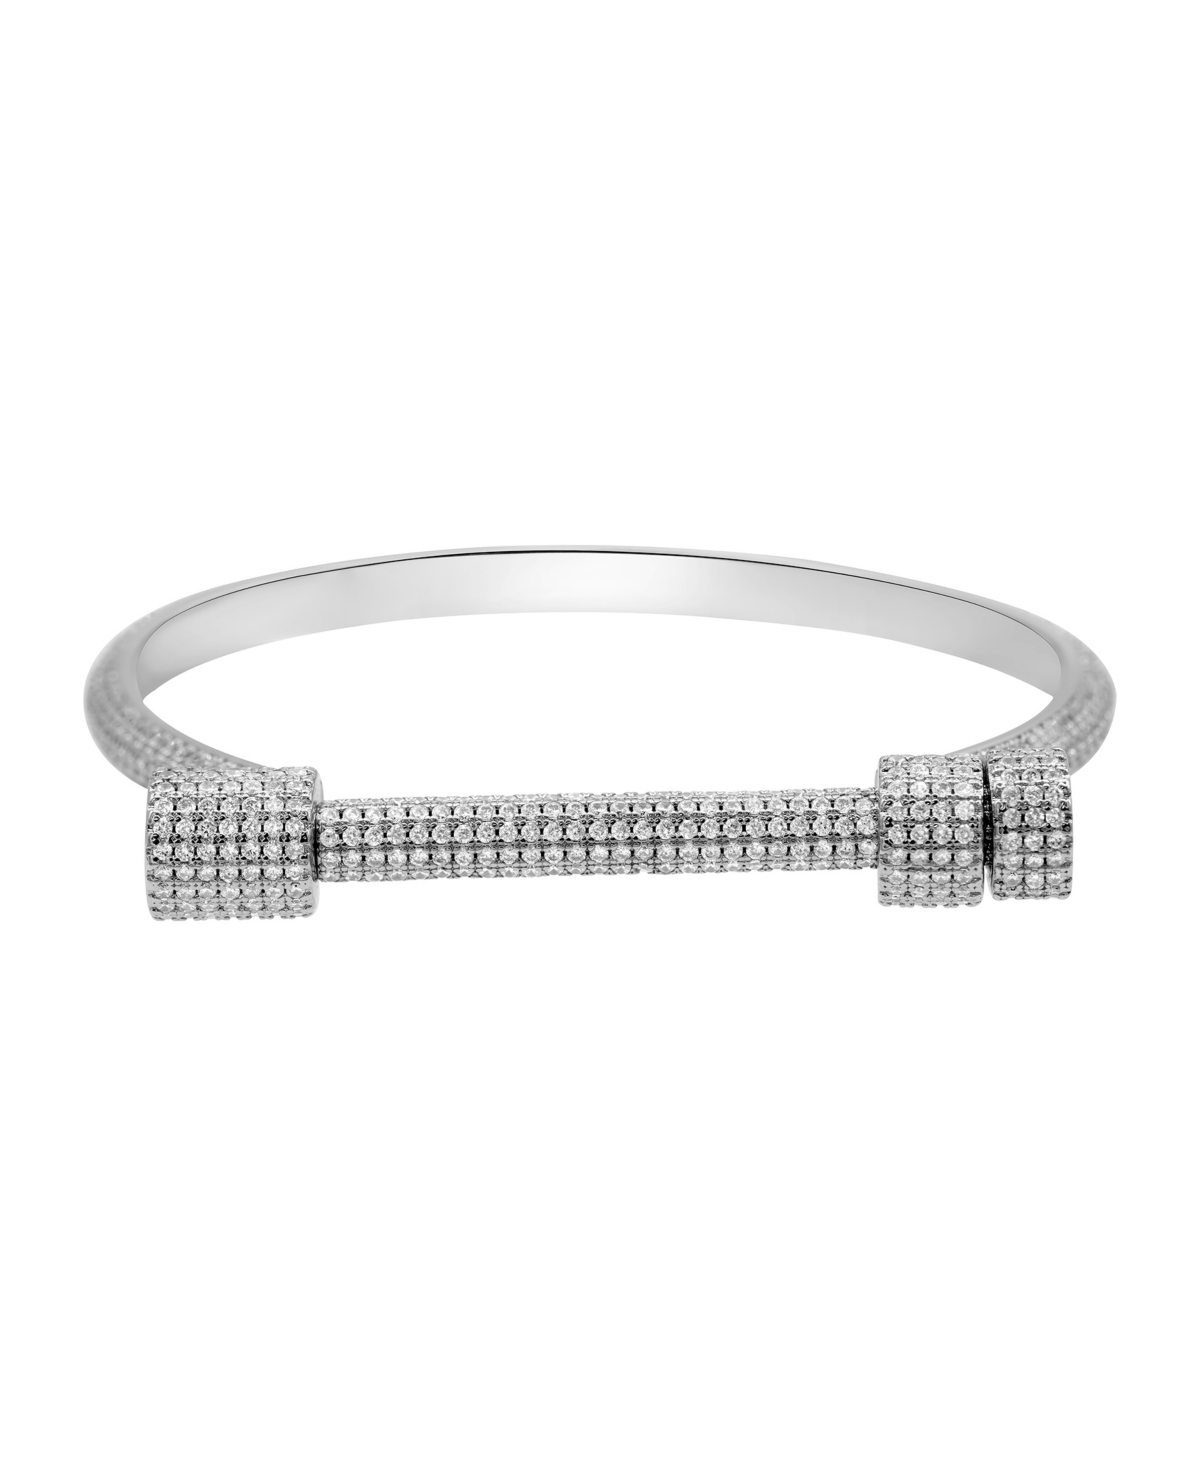 Shop Adornia Silver-plated Crystal Screw Cuff Bracelet